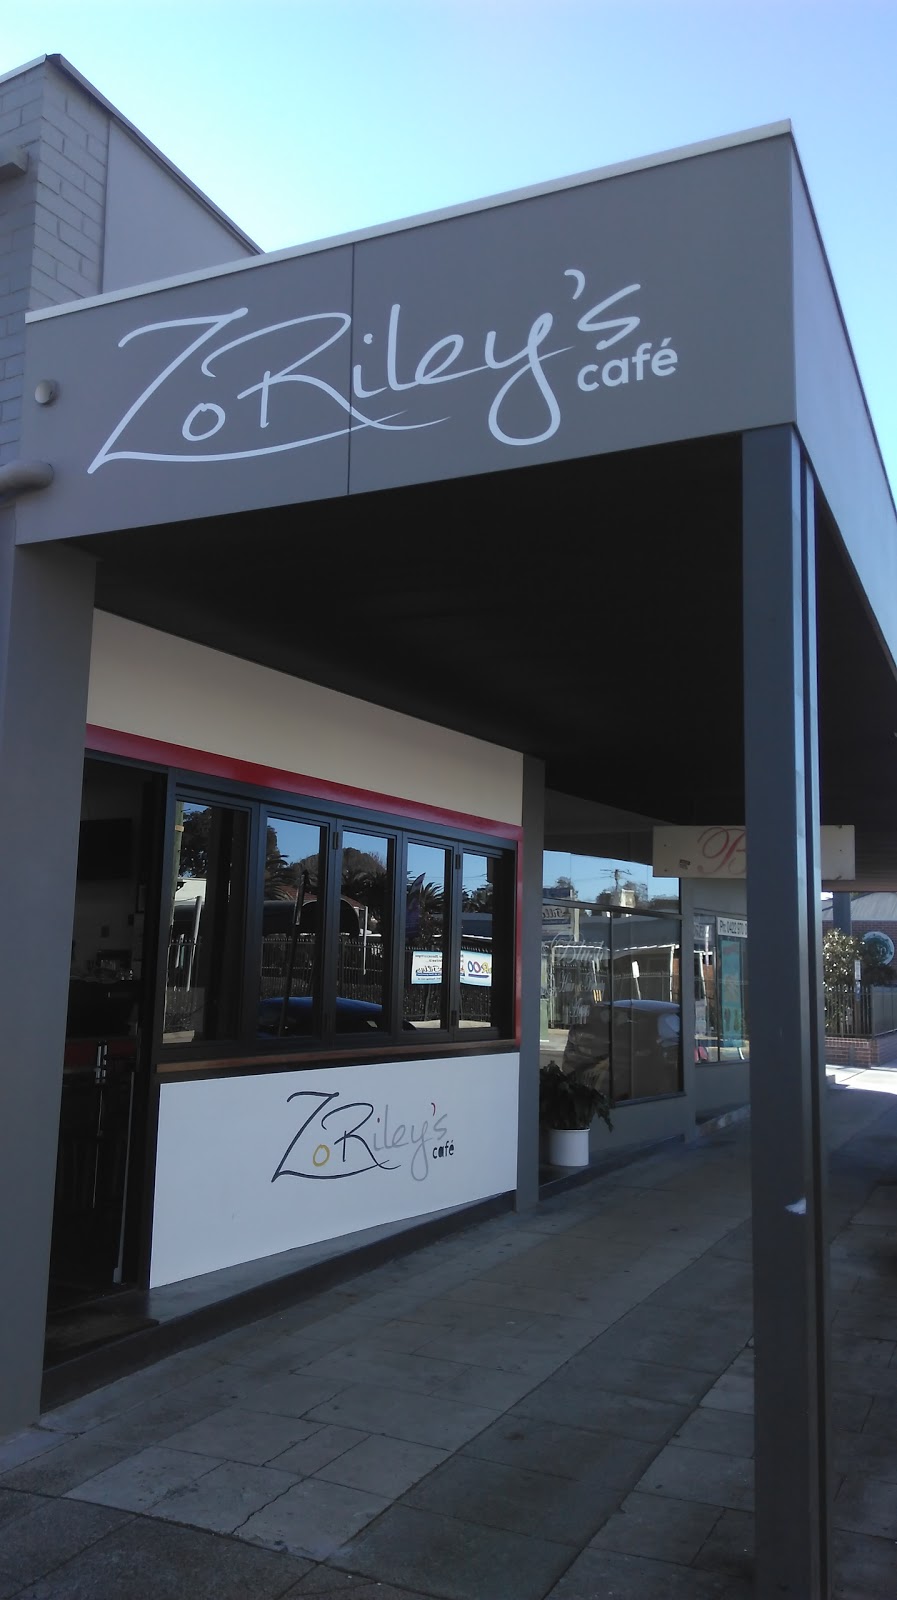 ZoRileys Cafe | cafe | 43 Station St, Waratah NSW 2298, Australia